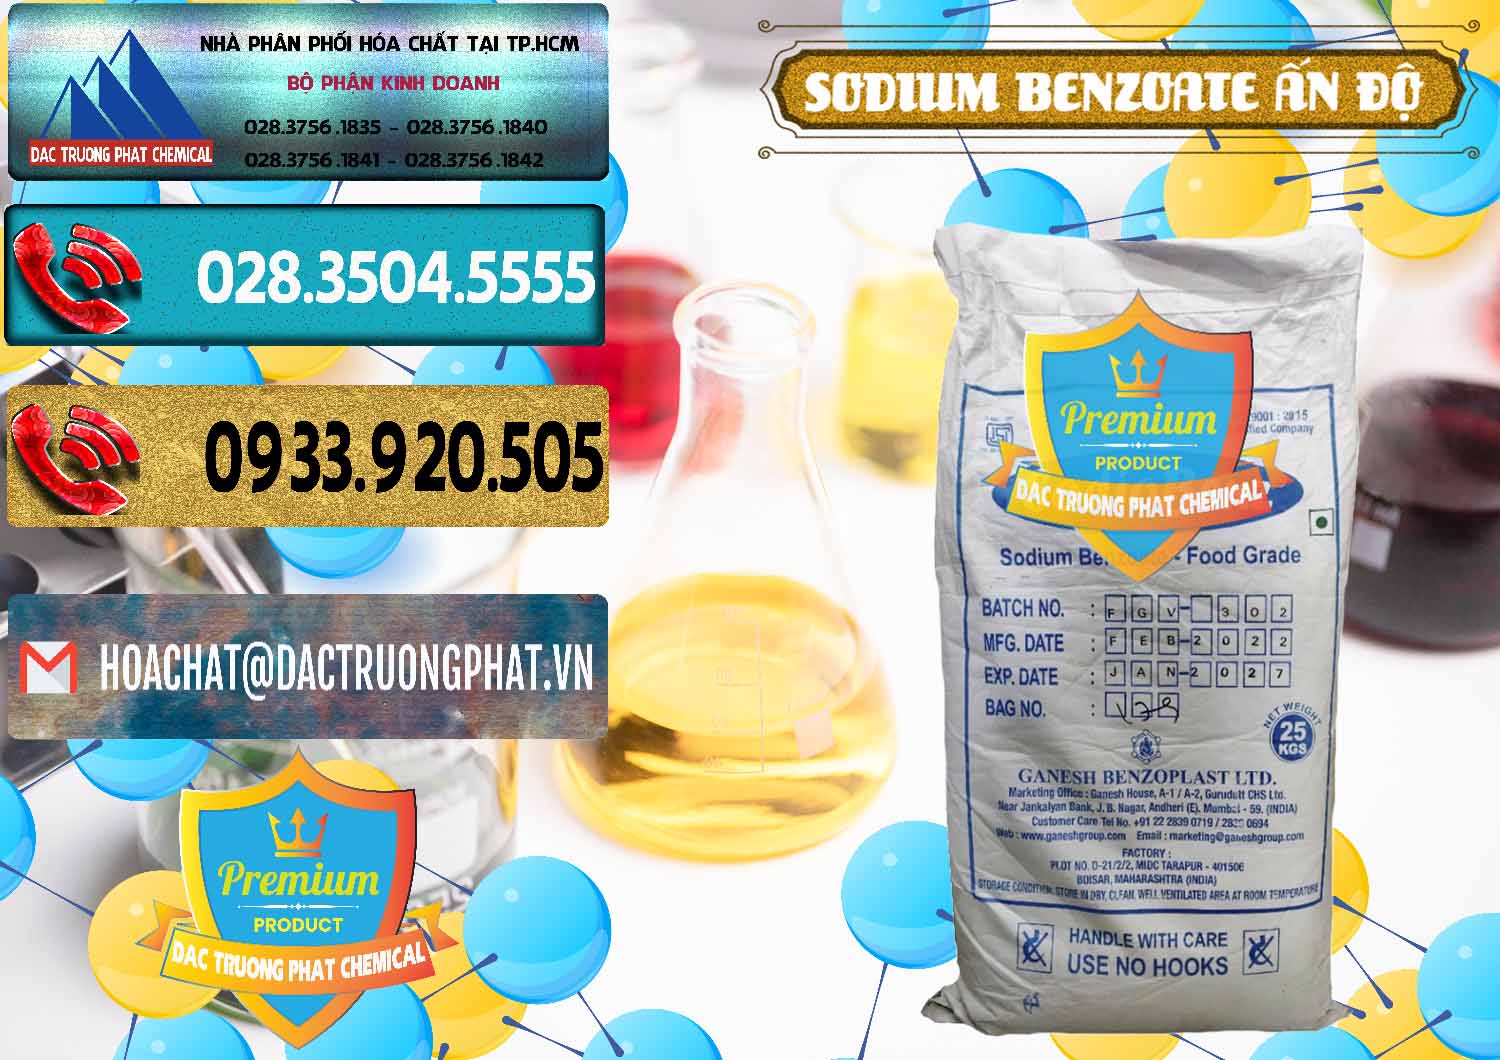 Cty chuyên bán ( cung cấp ) Sodium Benzoate - Mốc Bột Ấn Độ India - 0361 - Nơi nhập khẩu và cung cấp hóa chất tại TP.HCM - hoachatdetnhuom.com